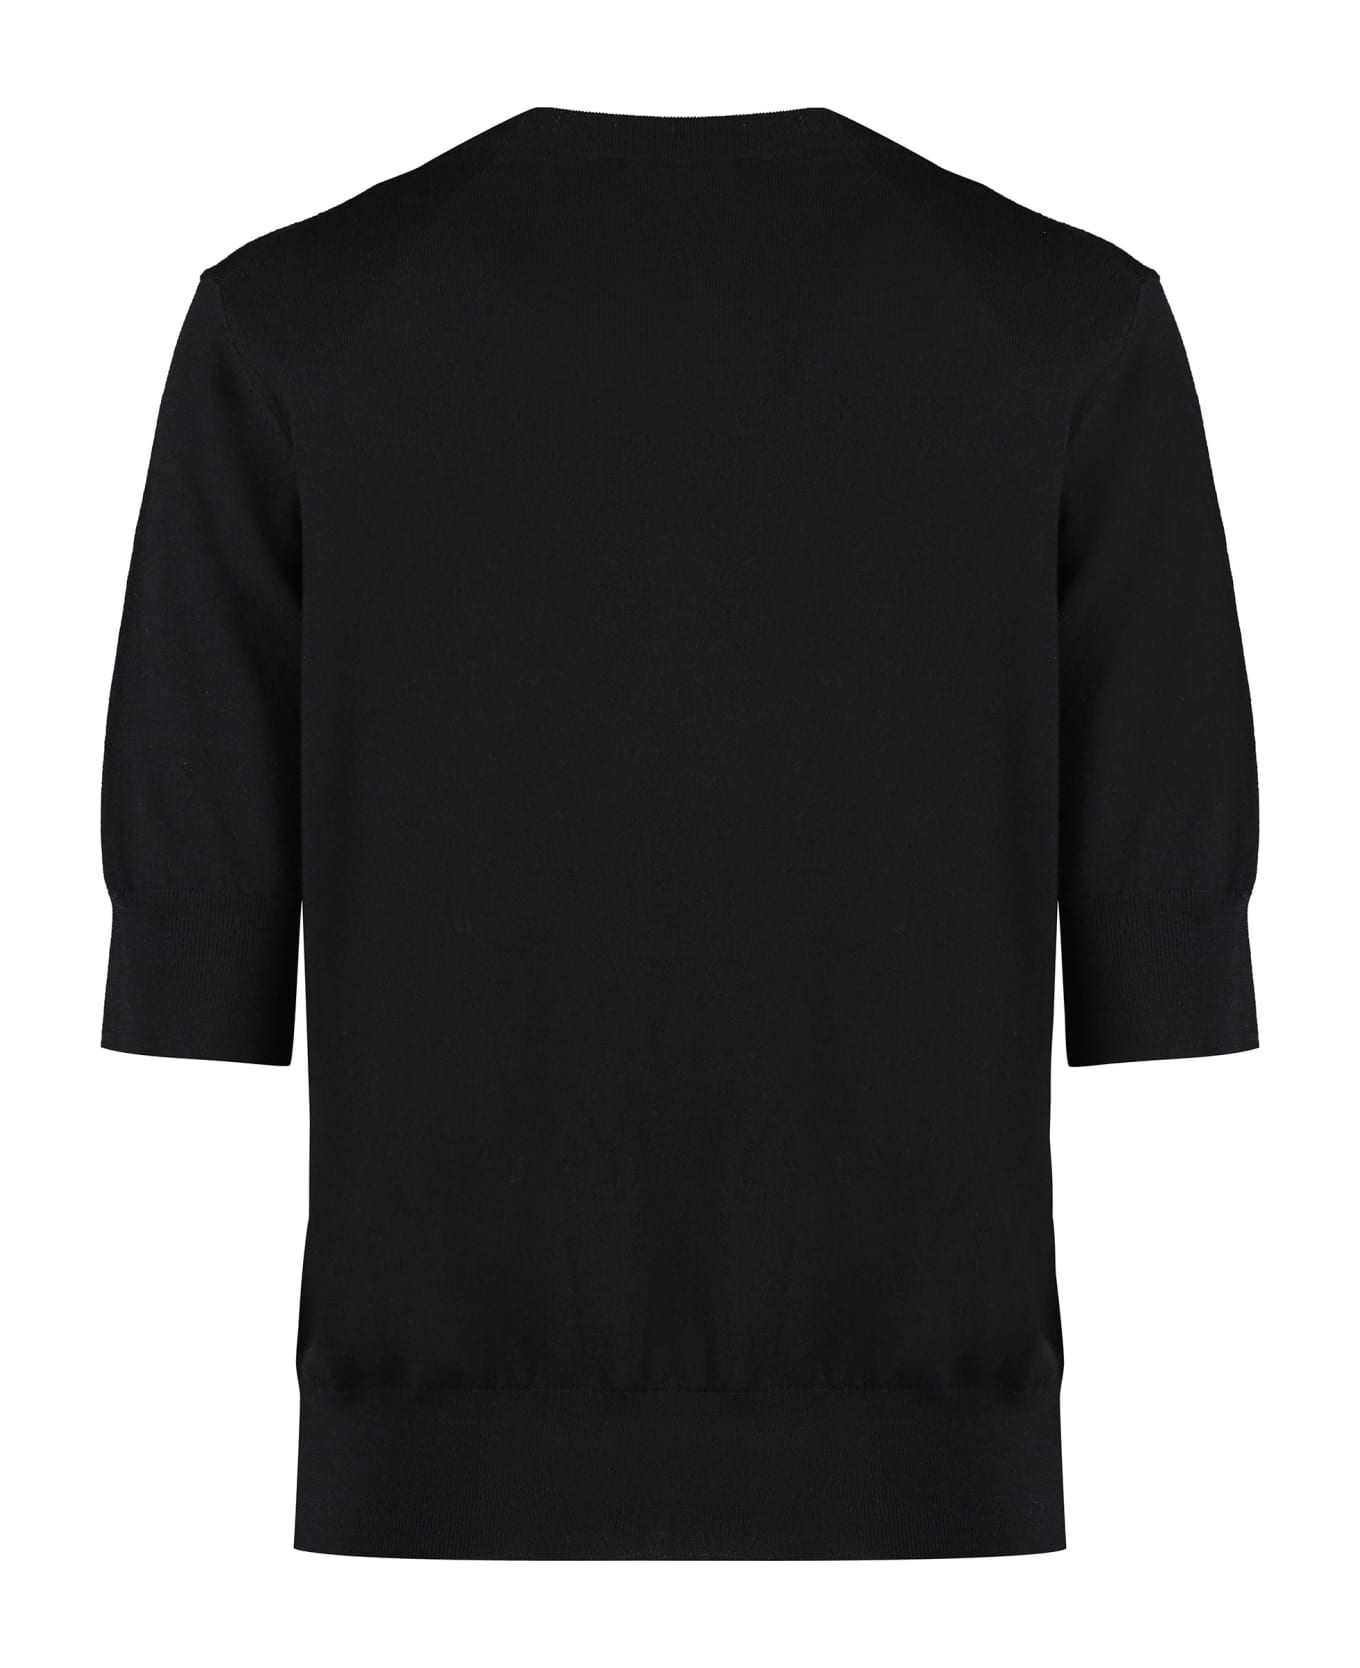 Parosh Short Sleeve Sweater - black ニットウェア